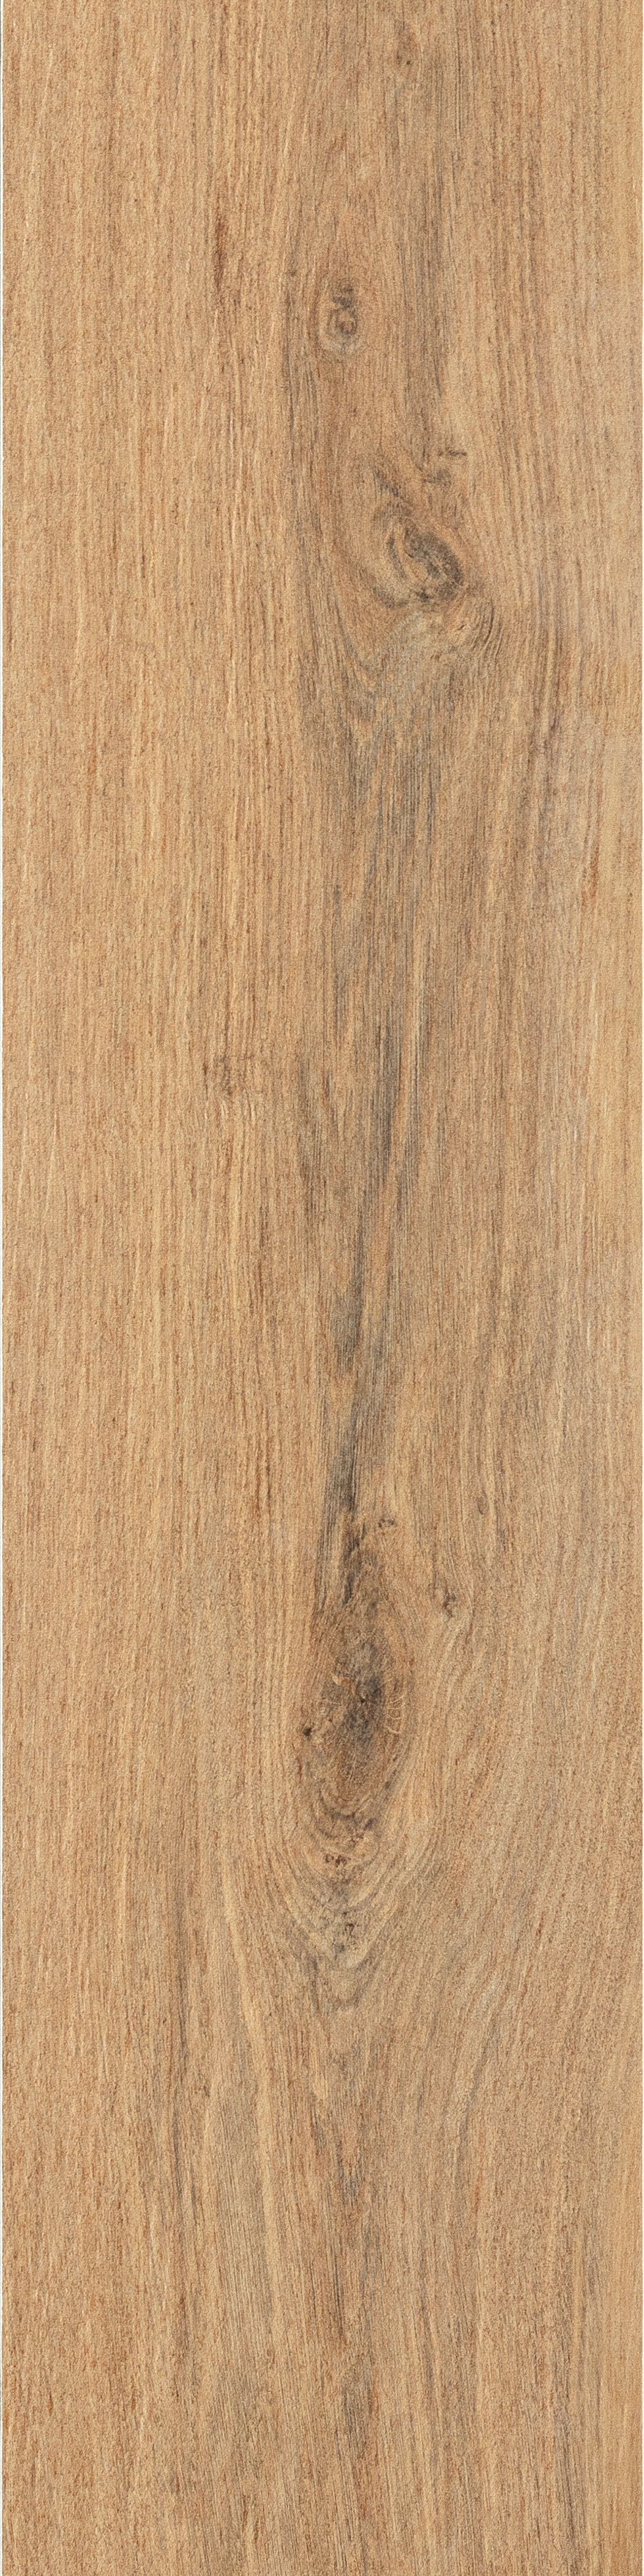 Terrassenplatte Holzoptik antike Eiche 30x120 cm "Rovere Antico" Feinsteinzeug 1,9 cm rektifiziert 